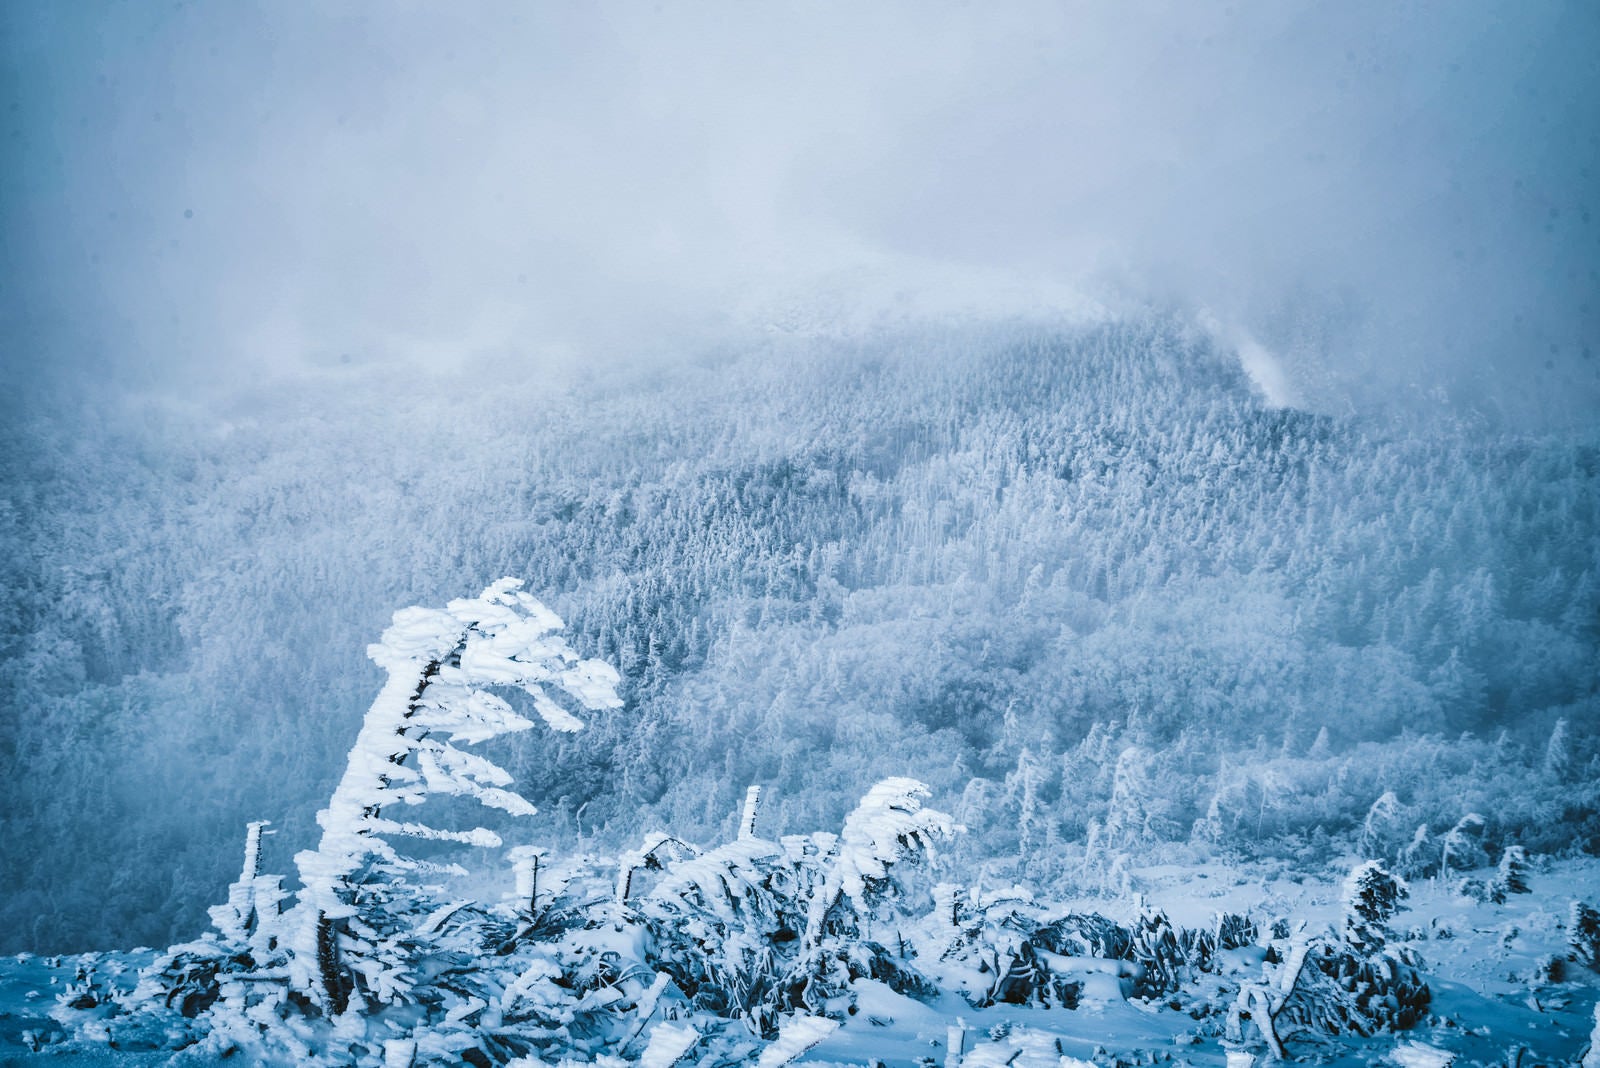 「エビの尻尾と吹雪く白銀の森」の写真